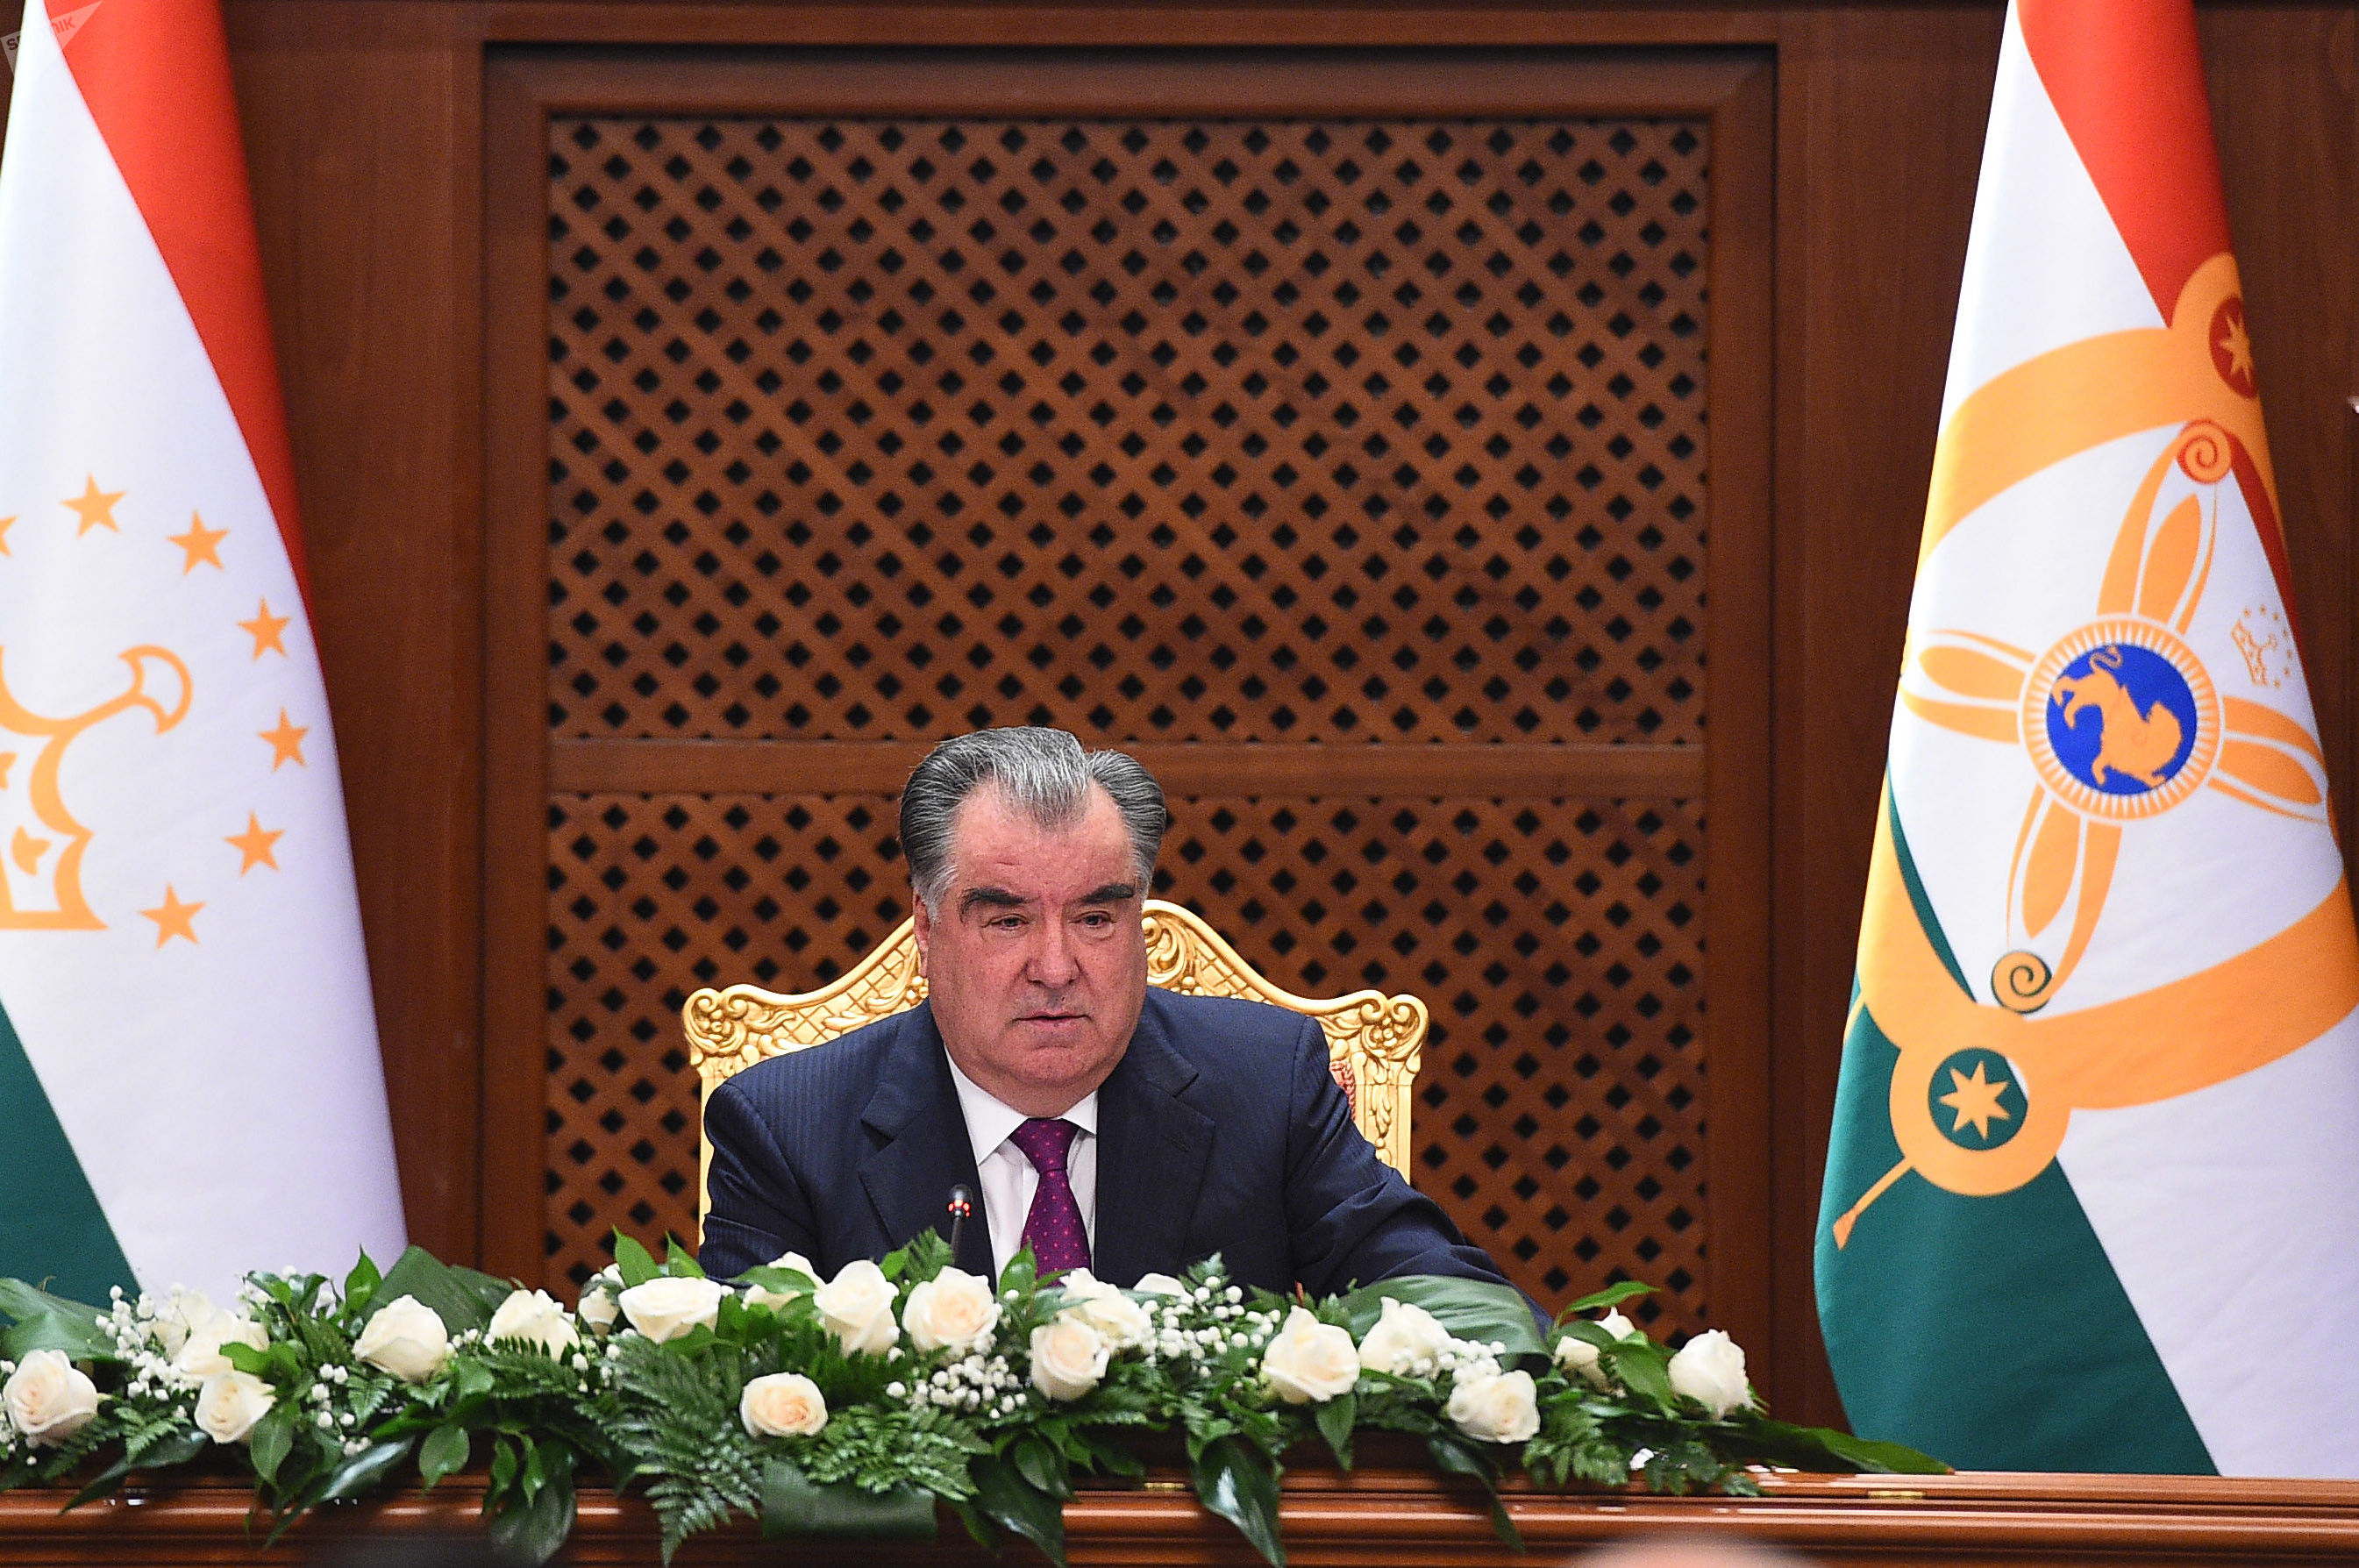 Заявление президента таджикистана. Эмомали Рахмон. Фото президента Таджикистана Эмомали Рахмон.